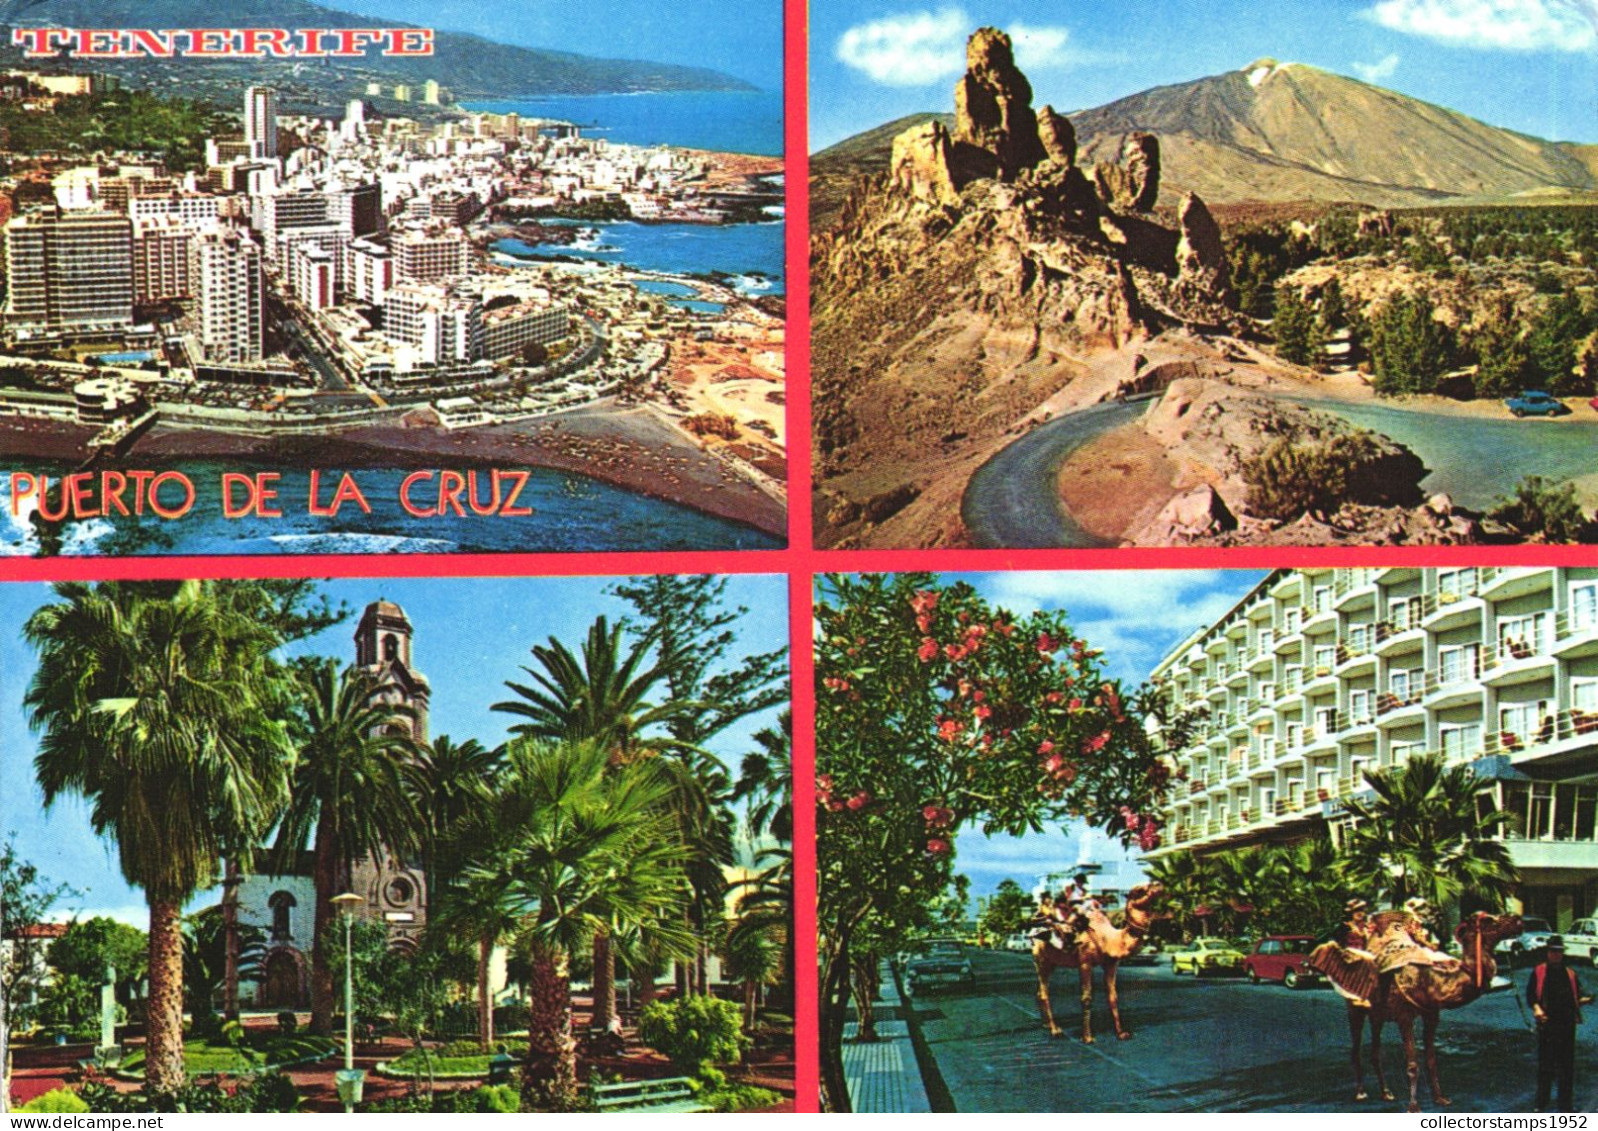 TENERIFE, CANARY ISLANDS, PUERTO DE LA CRUZ, MULTIPLE VIEWS, ARCHITECTURE, BEACH, PARK, MOUNTAIN, CAMEL, SPAIN, POSTCARD - Tenerife